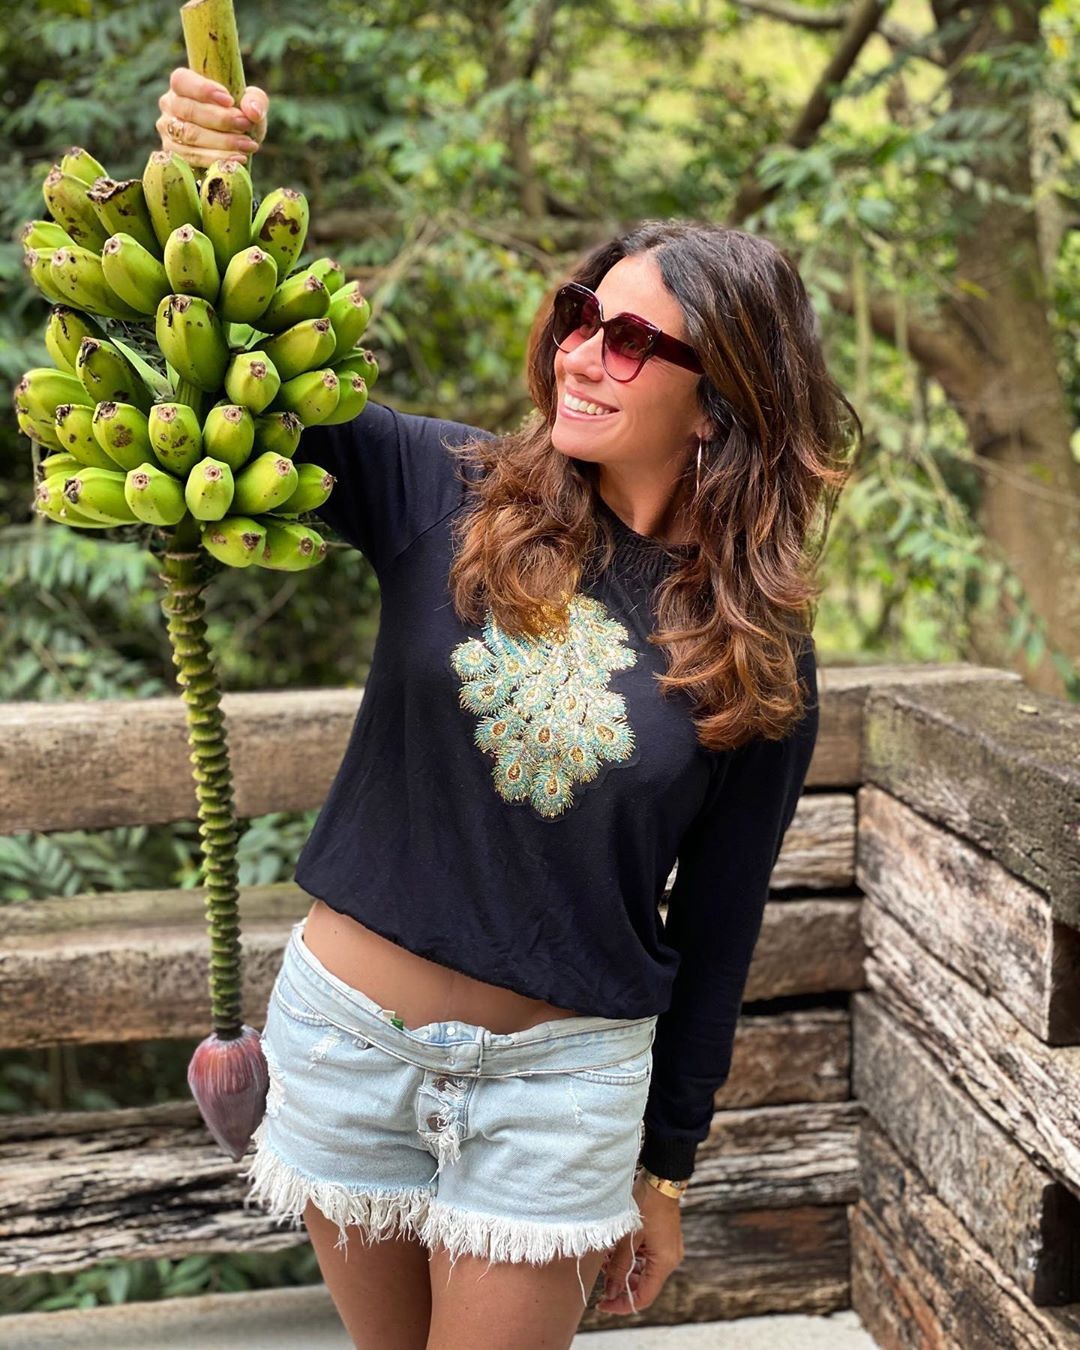 Giovanna Antonelli colhe penca de bananas no quintal de casa (Foto: Reprodução/Instagram)